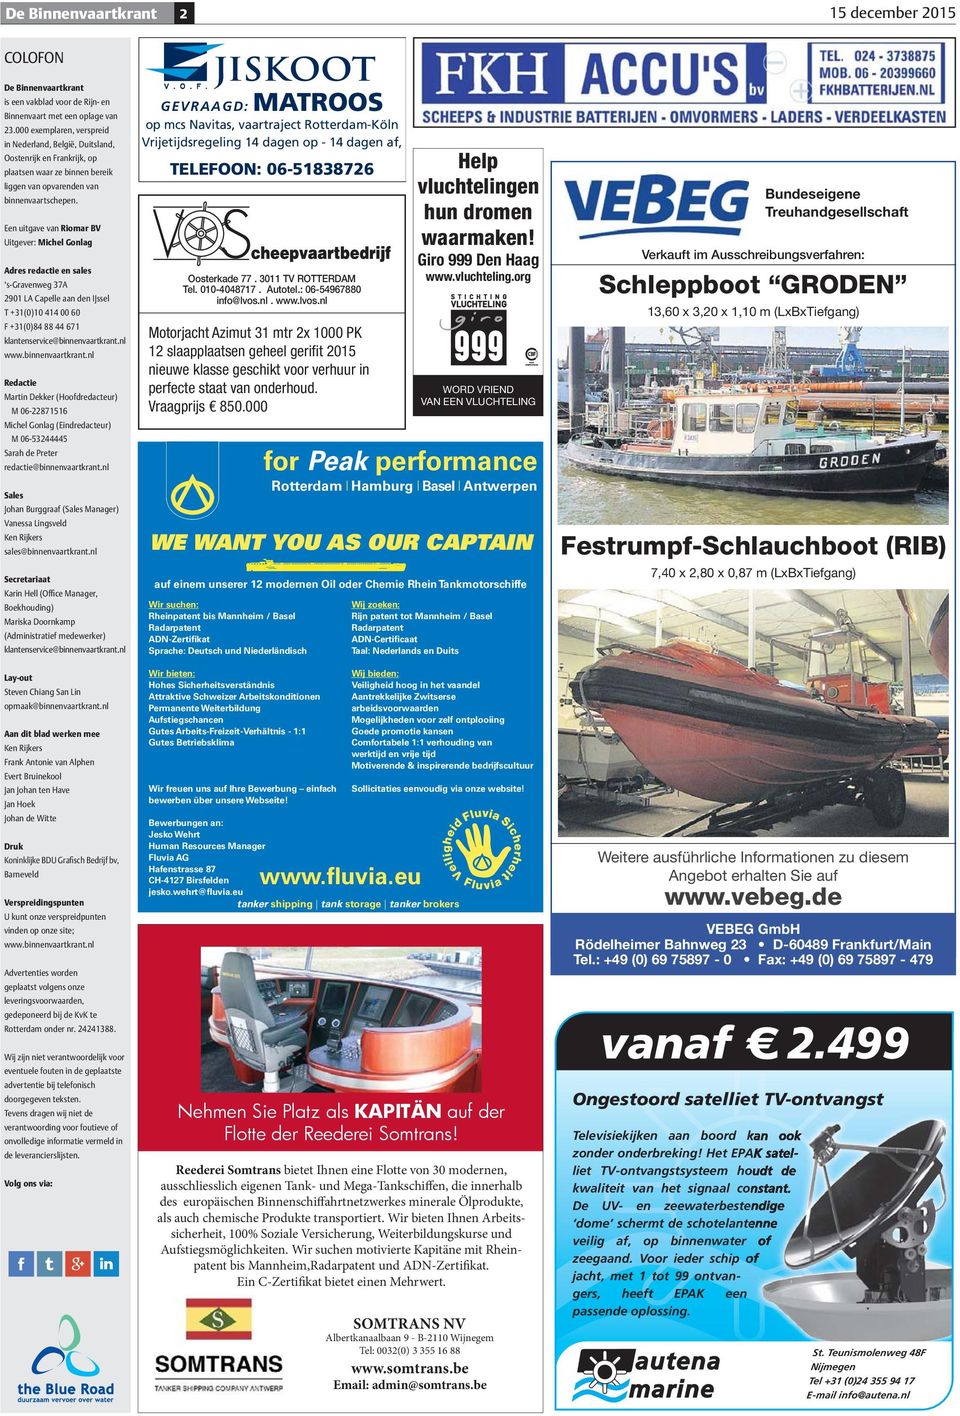 Een uitgave van Riomar BV Uitgever: Michel Gonlag Adres redactie en sales s-gravenweg 37A 2901 LA Capelle aan den IJssel T +31(0)10 414 00 60 F +31(0)84 88 44 671 klantenservice@binnenvaartkrant.